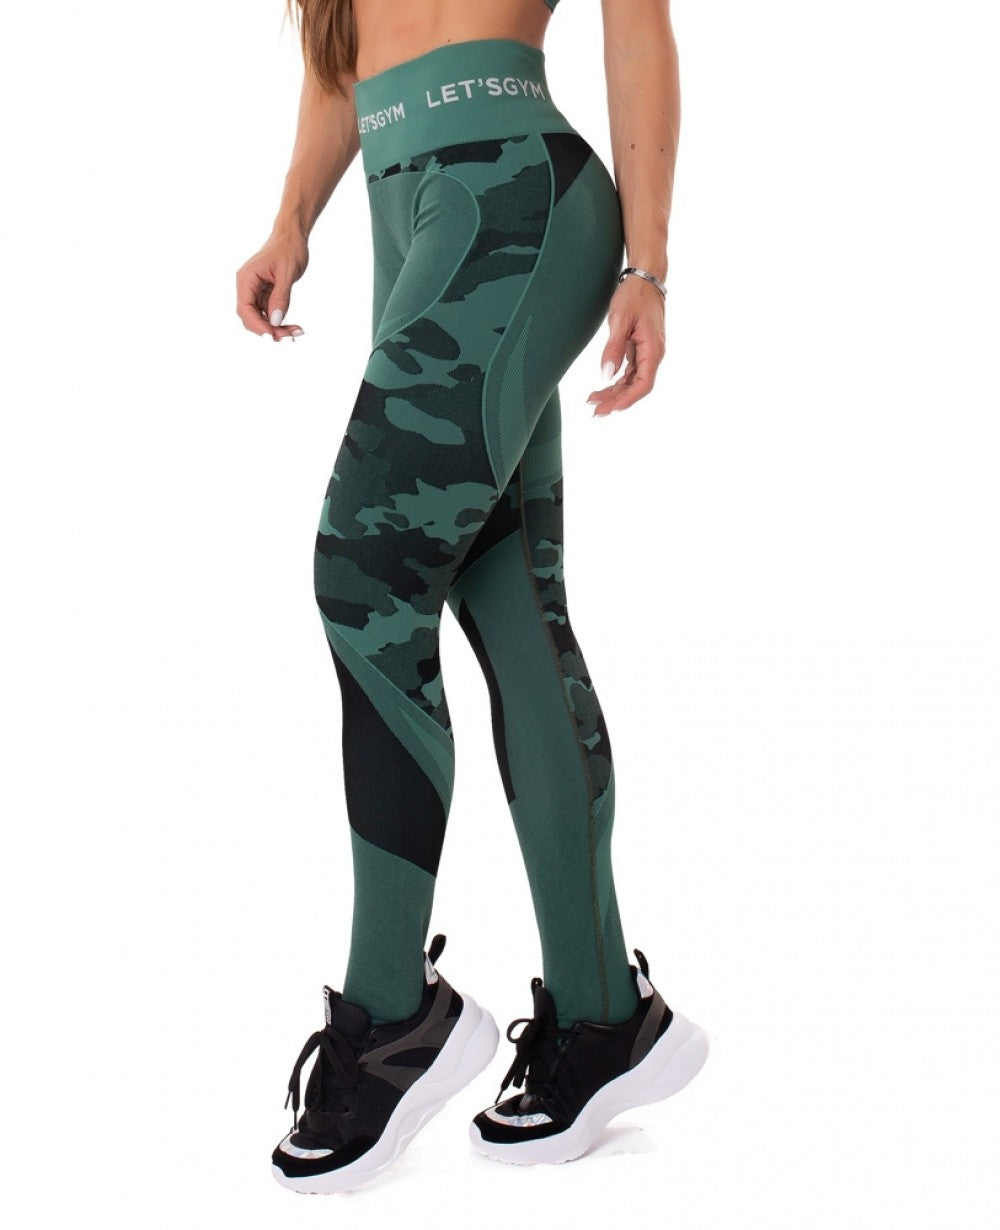 Green Seamless Camo Gym Legging, Activewear